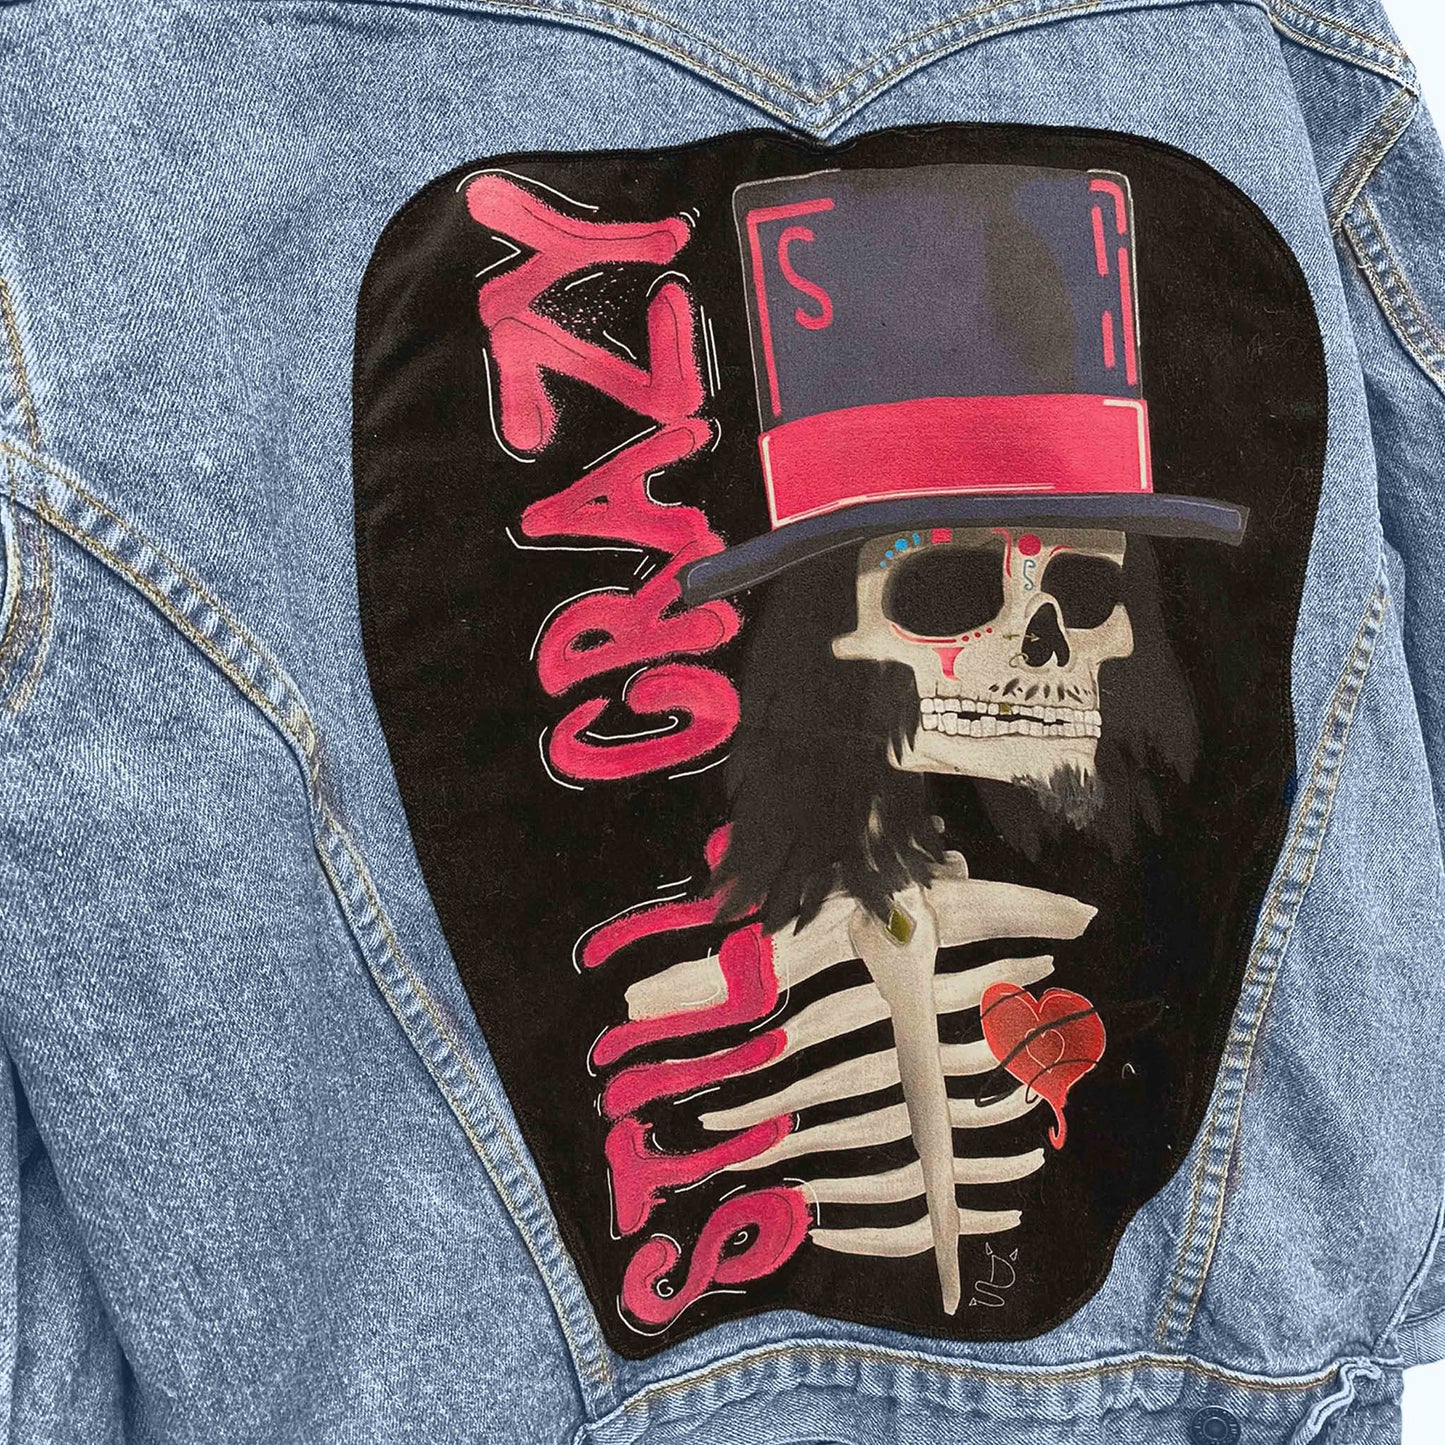 Upcycled Vintage Denim Jacket "Still Crazy"